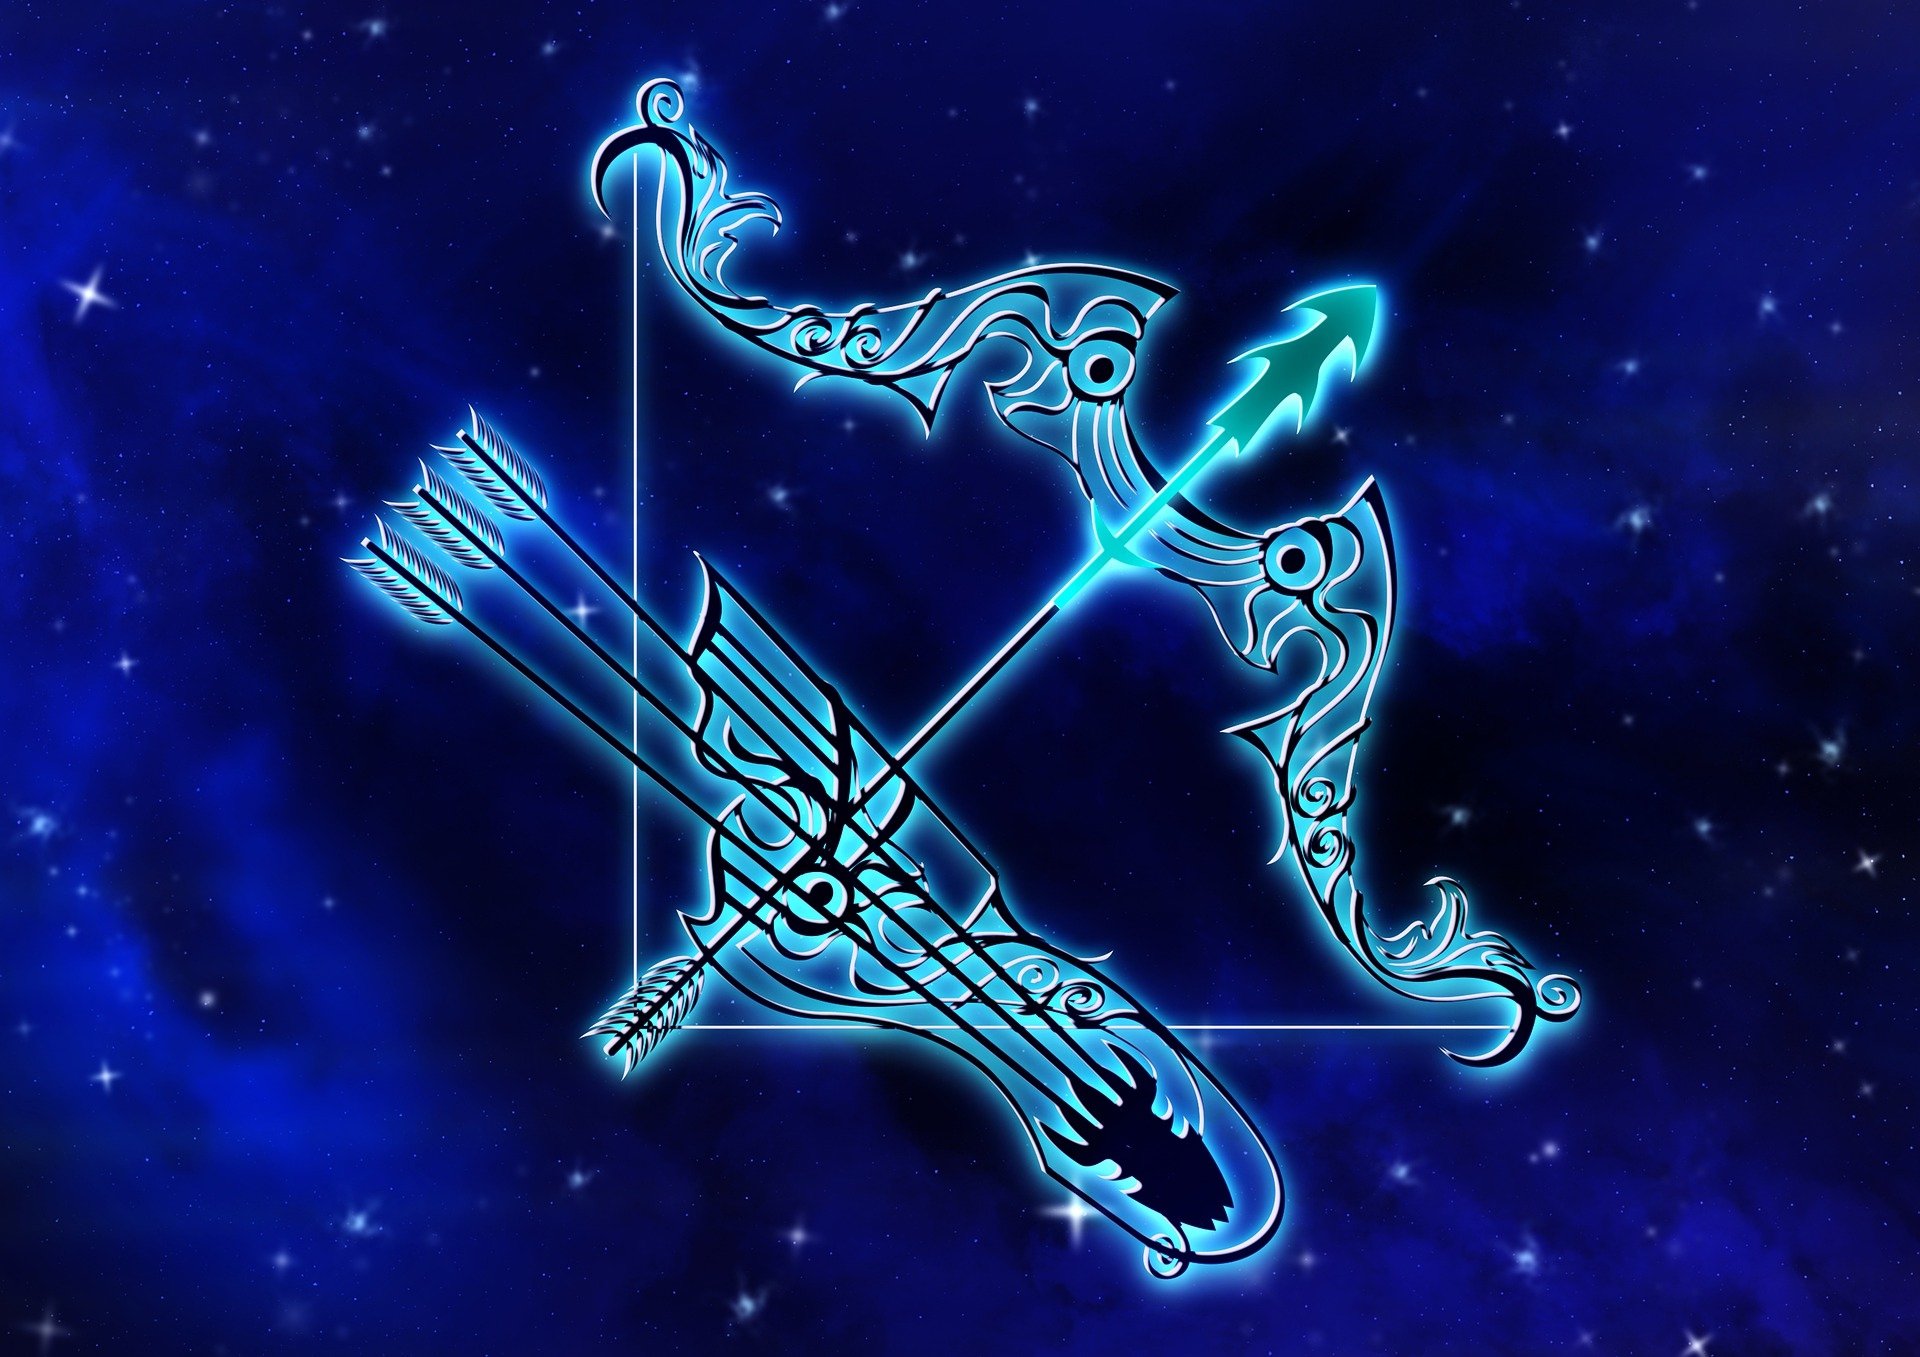 Blue Sagittarius The Archer By Darkworkx HD Wallpaper Background